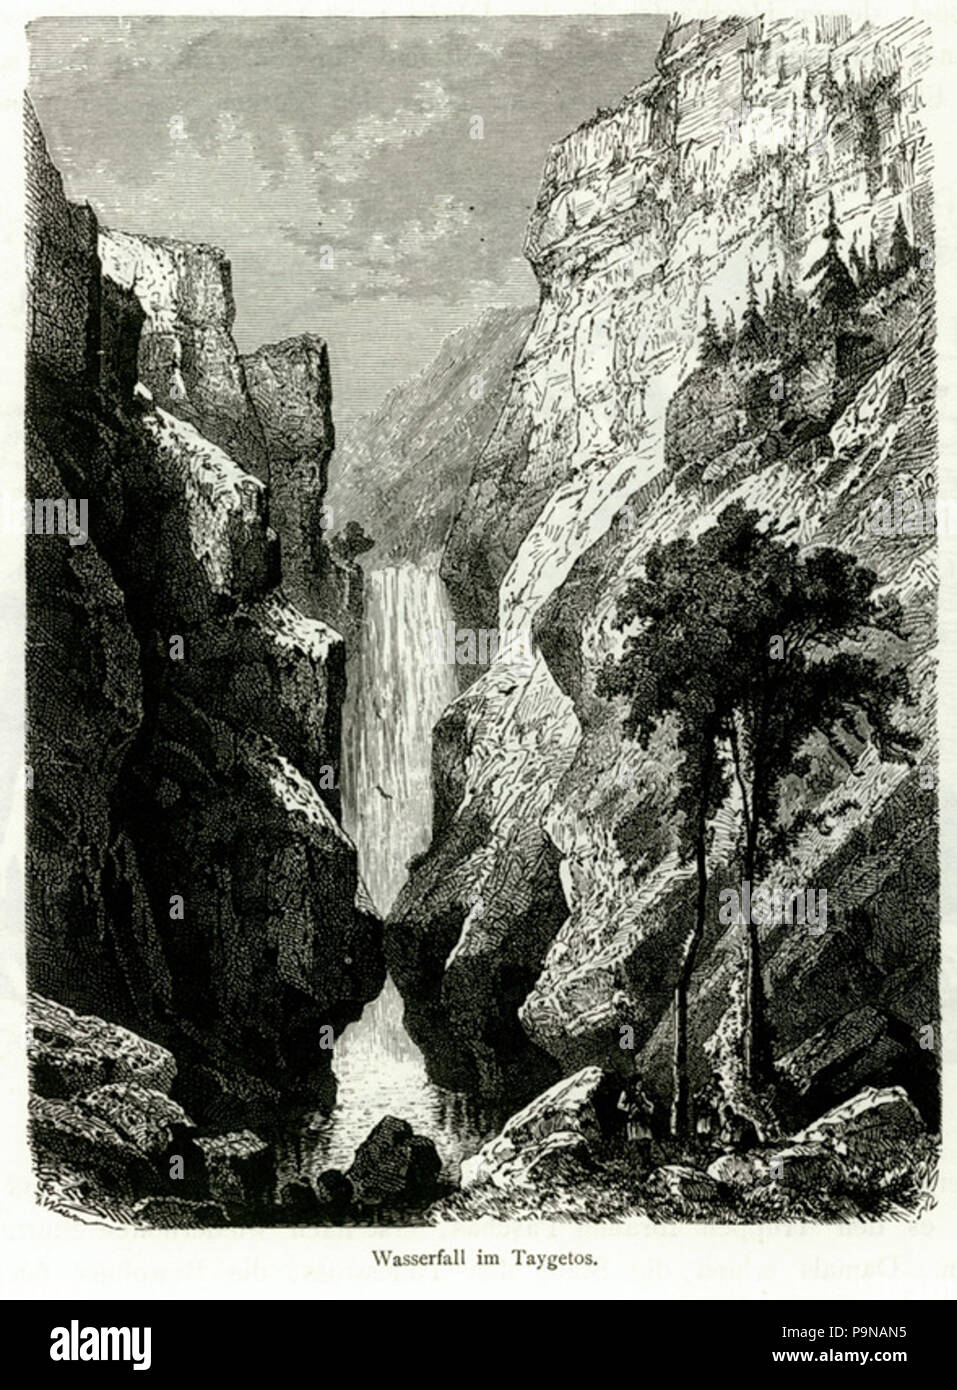 329 Wasserfall im Taigetos - Schweiger Lerchenfeld Amand (Freiherr von) - 1887 Foto Stock